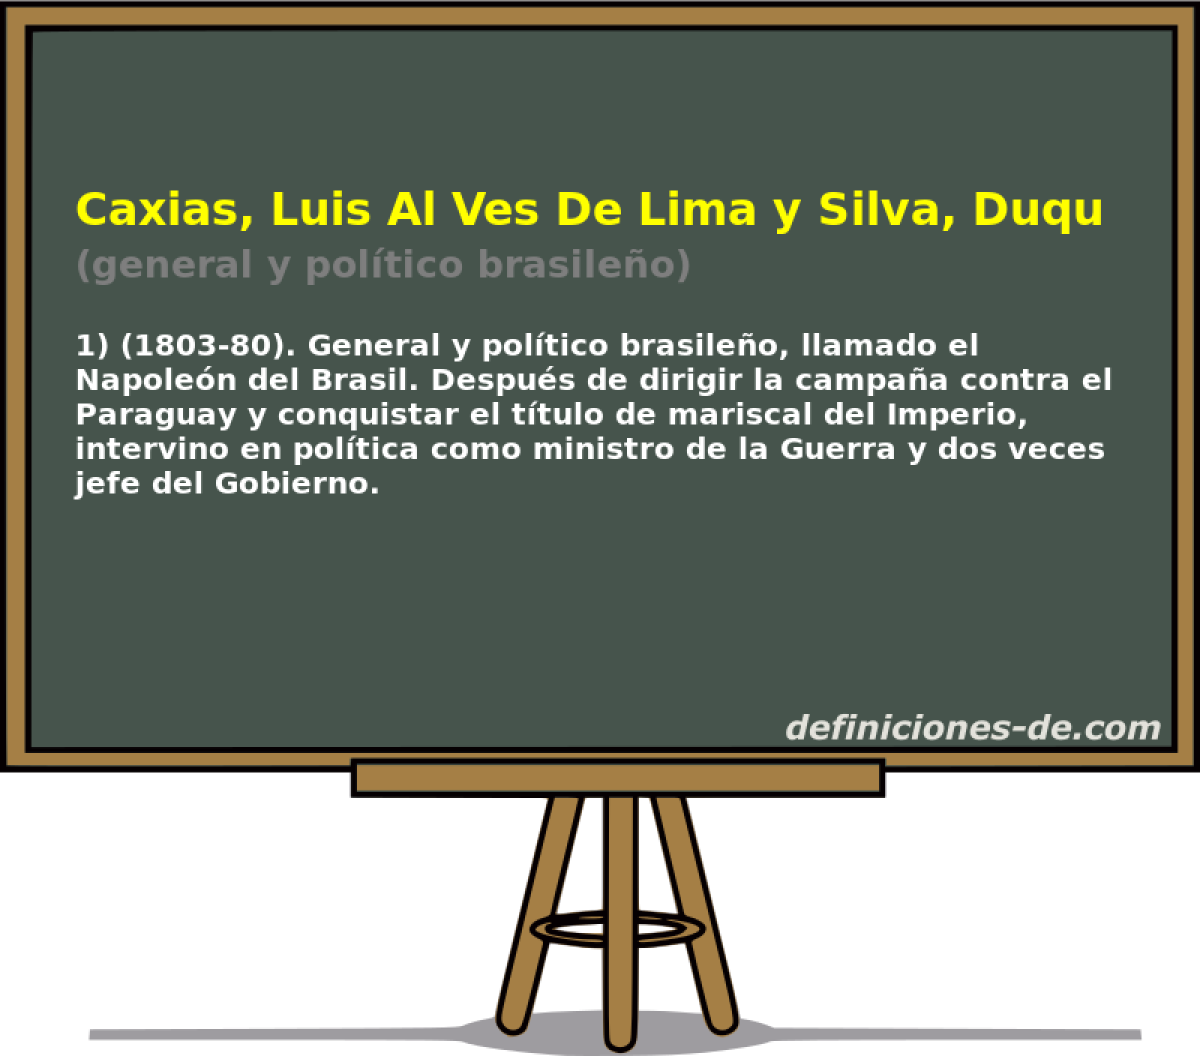 Caxias, Luis Al Ves De Lima y Silva, Duque De (general y poltico brasileo)